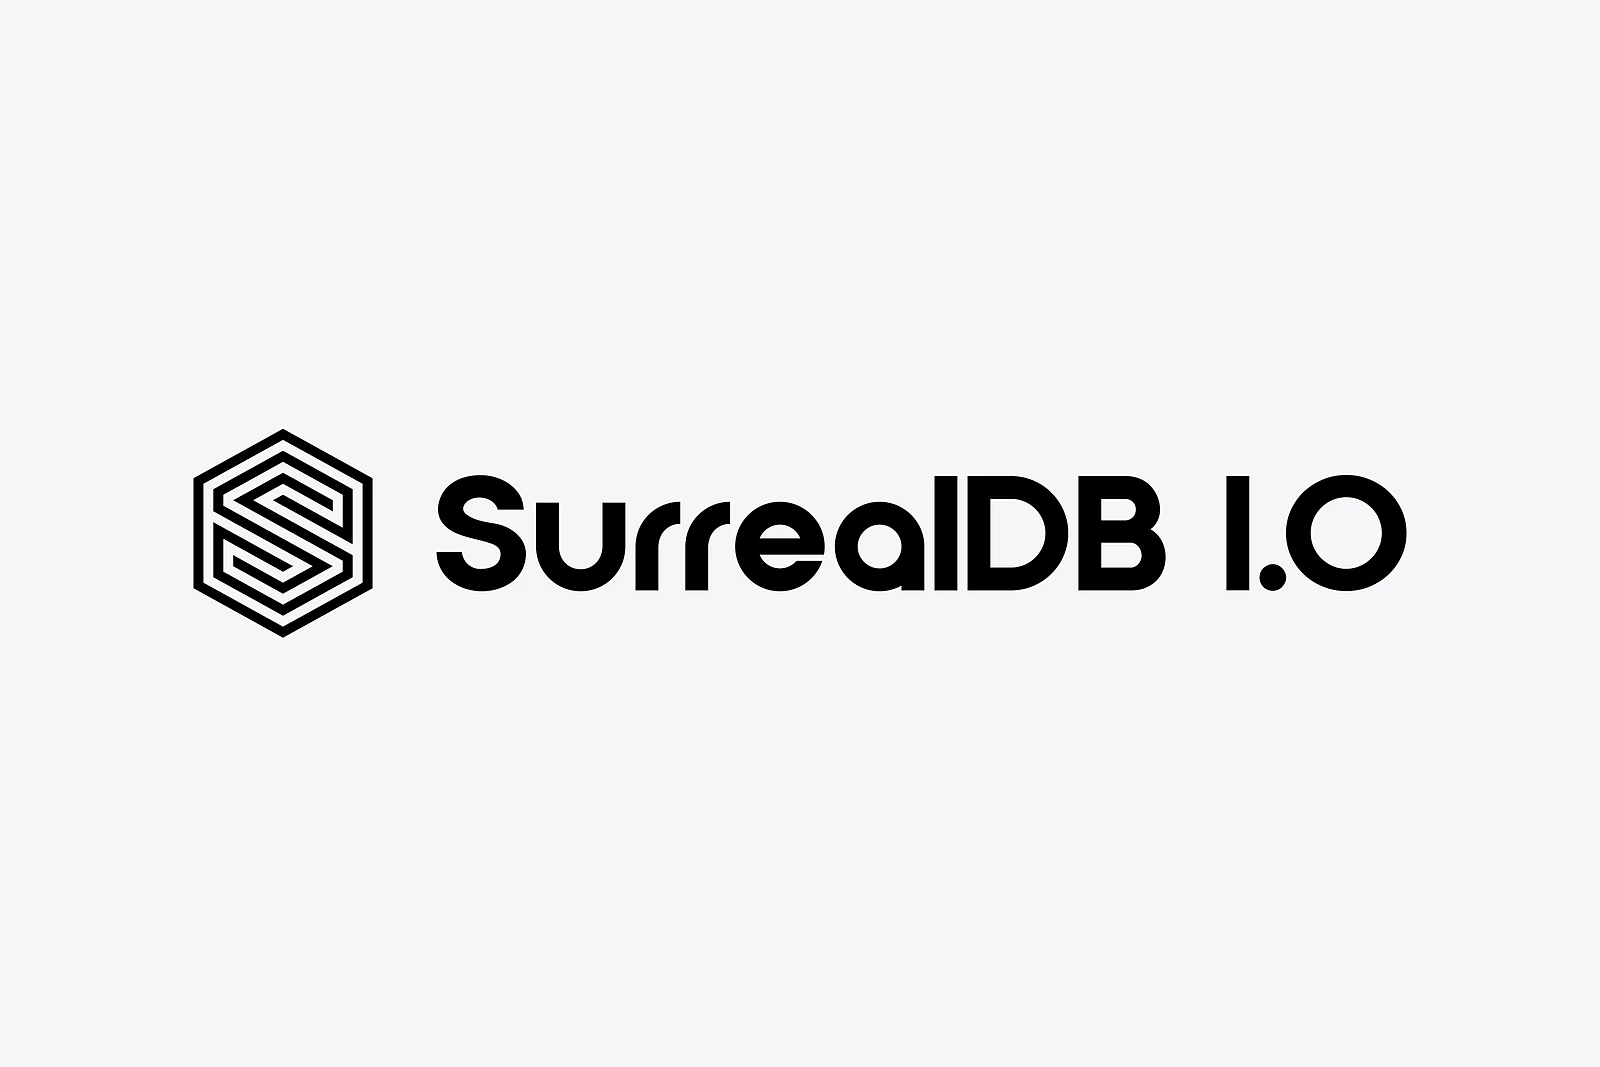 Announcing SurrealDB 1.0